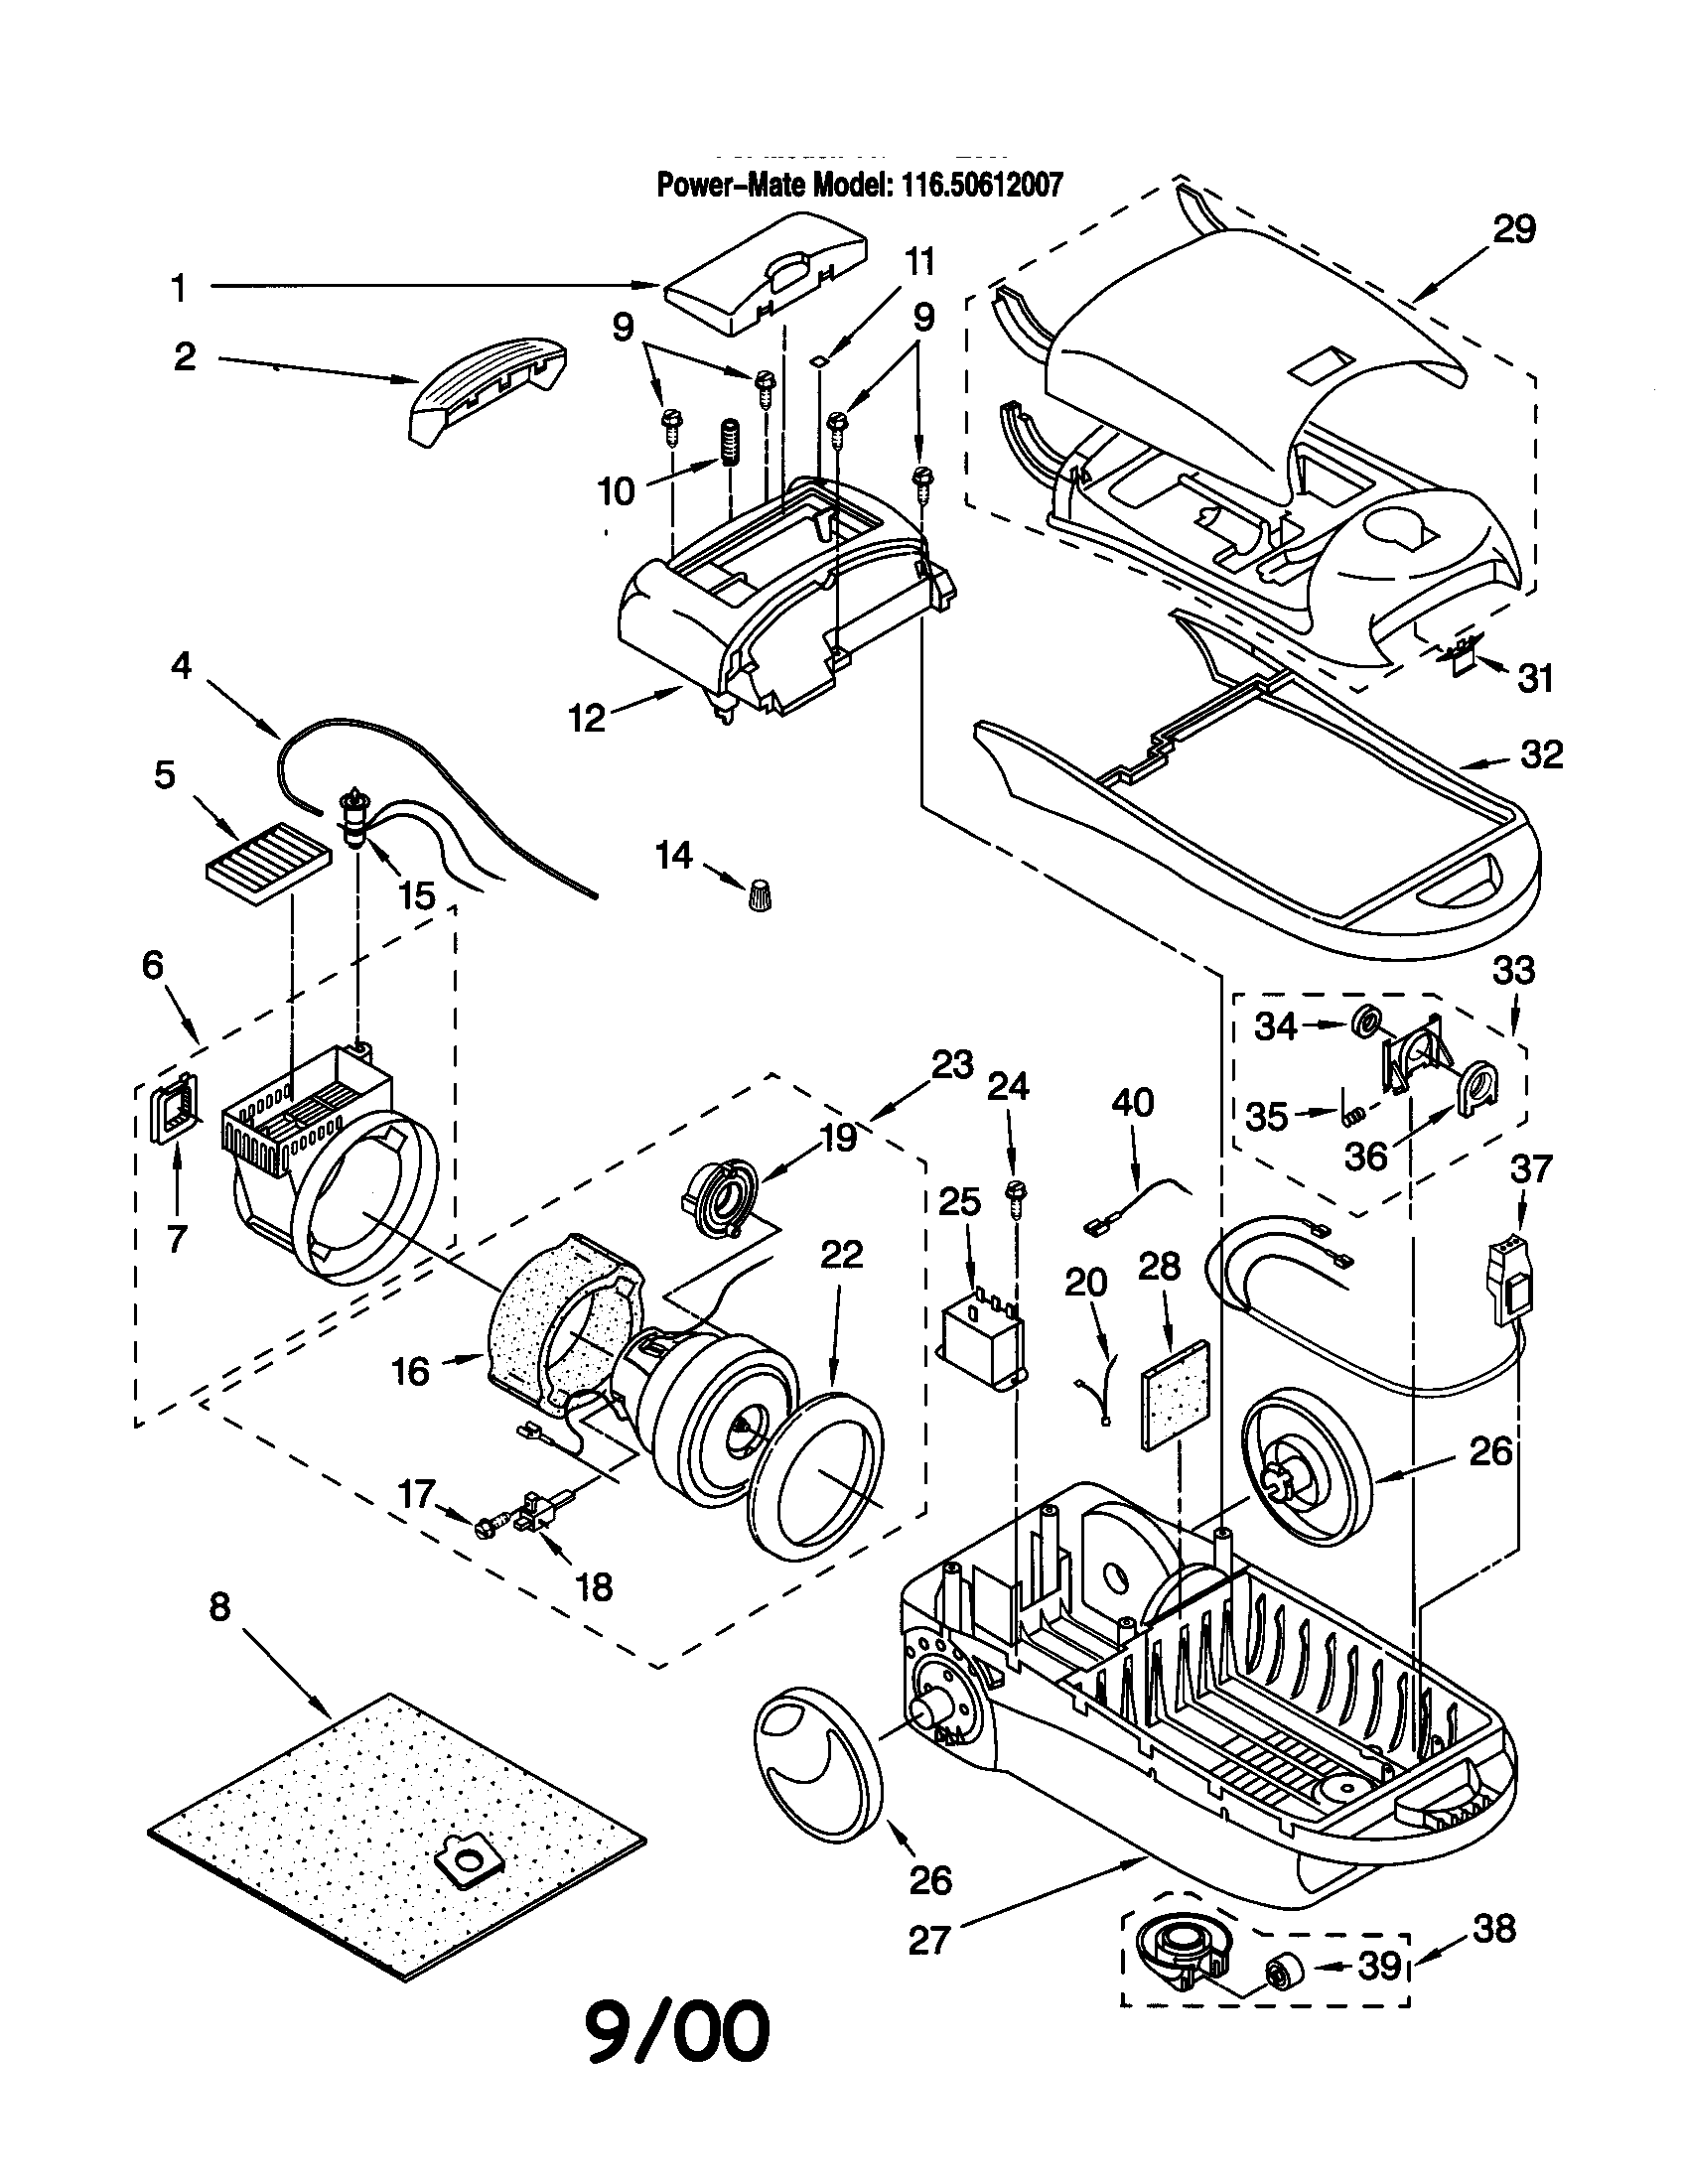 Wiring Diagram Vacuum Cleaner